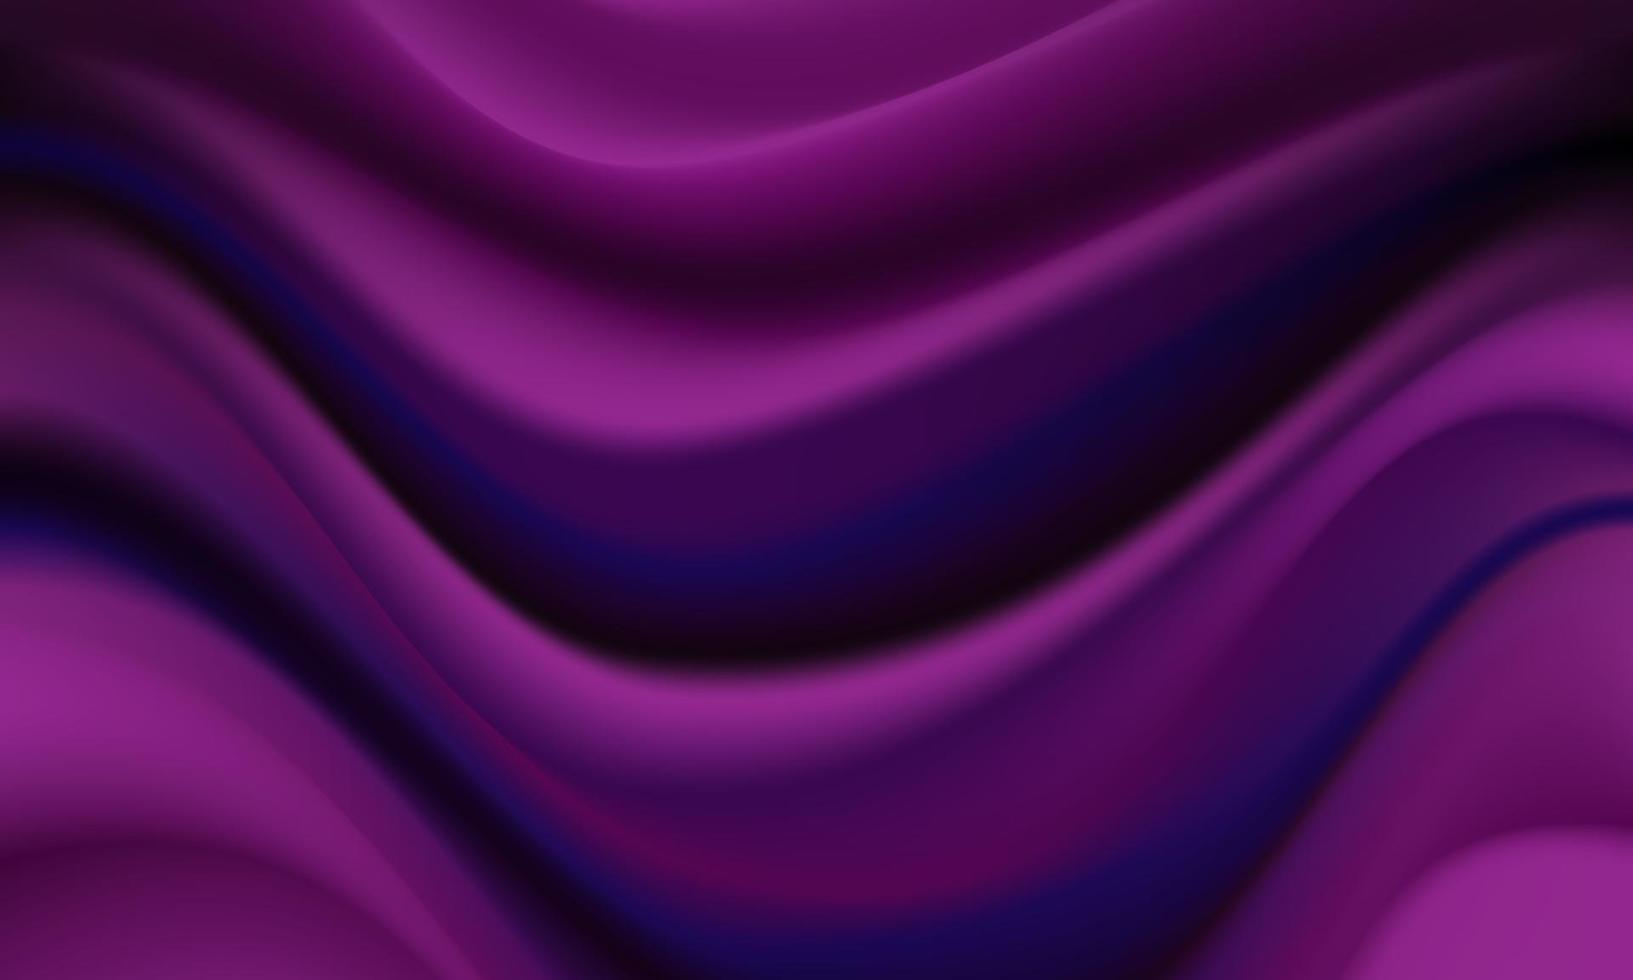 astratto rosa viola onda curva morbido sfondo vettore